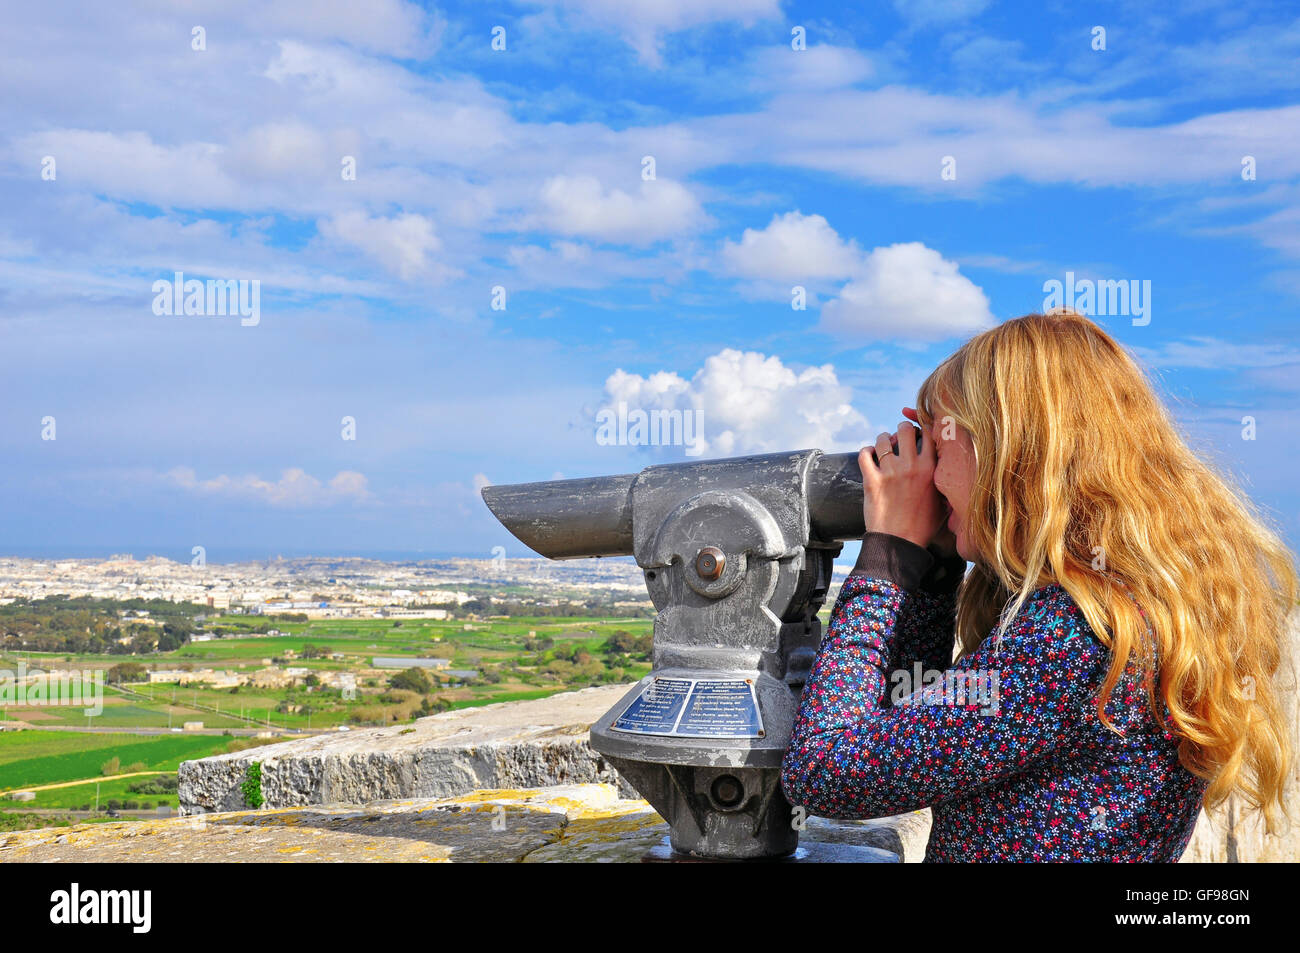 Blondy hair girl depuis longtemps à la recherche de télescope. Les îles maltaises Banque D'Images